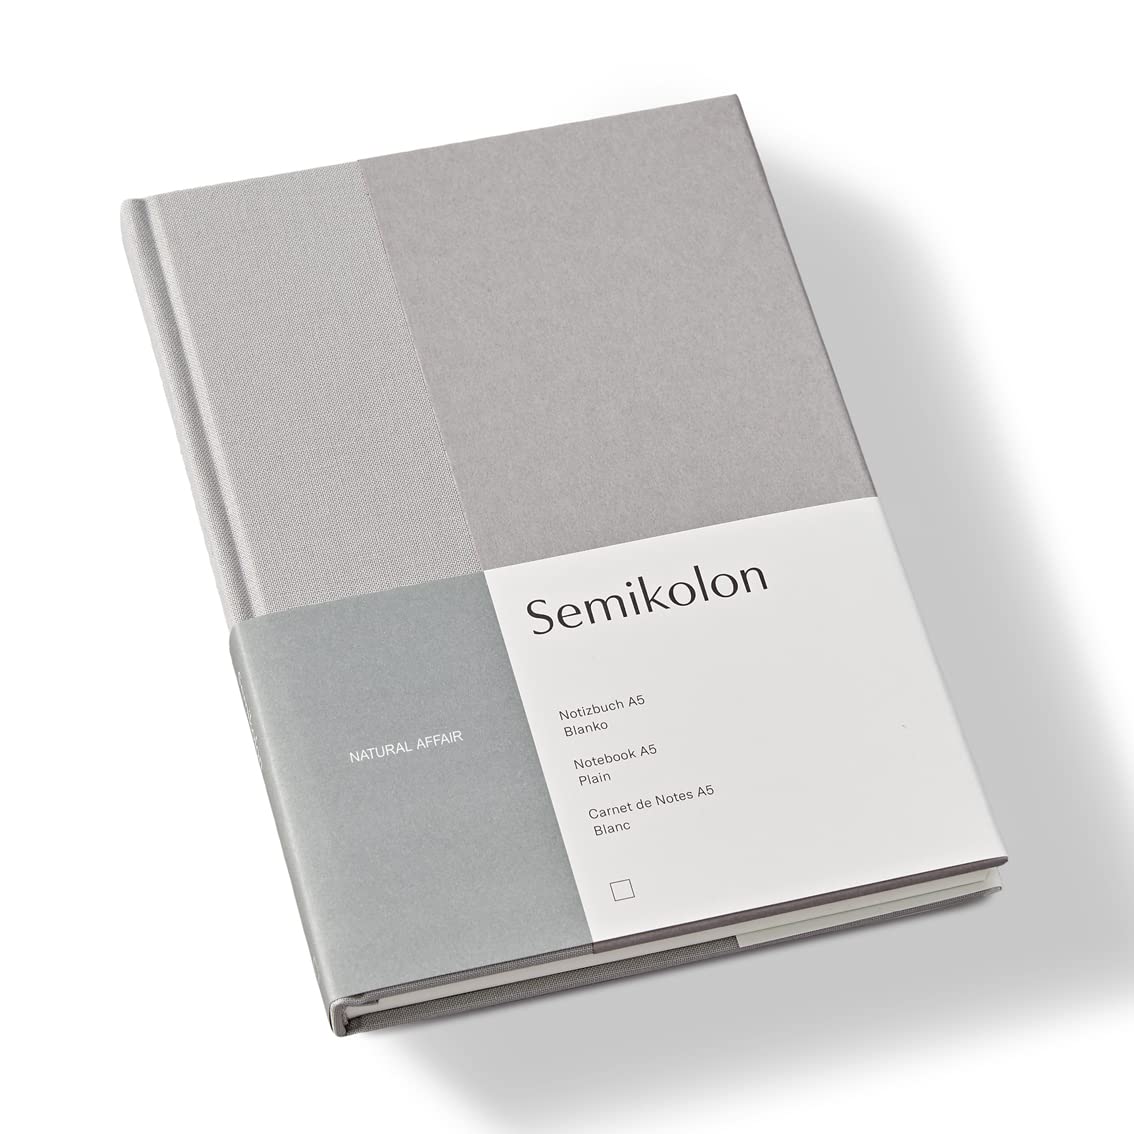 Semikolon 368723 – Notizbuch Natural Affair A5 blanko - 176 Seiten, cremeweißes Papier – Lesezeichen – Moonstone